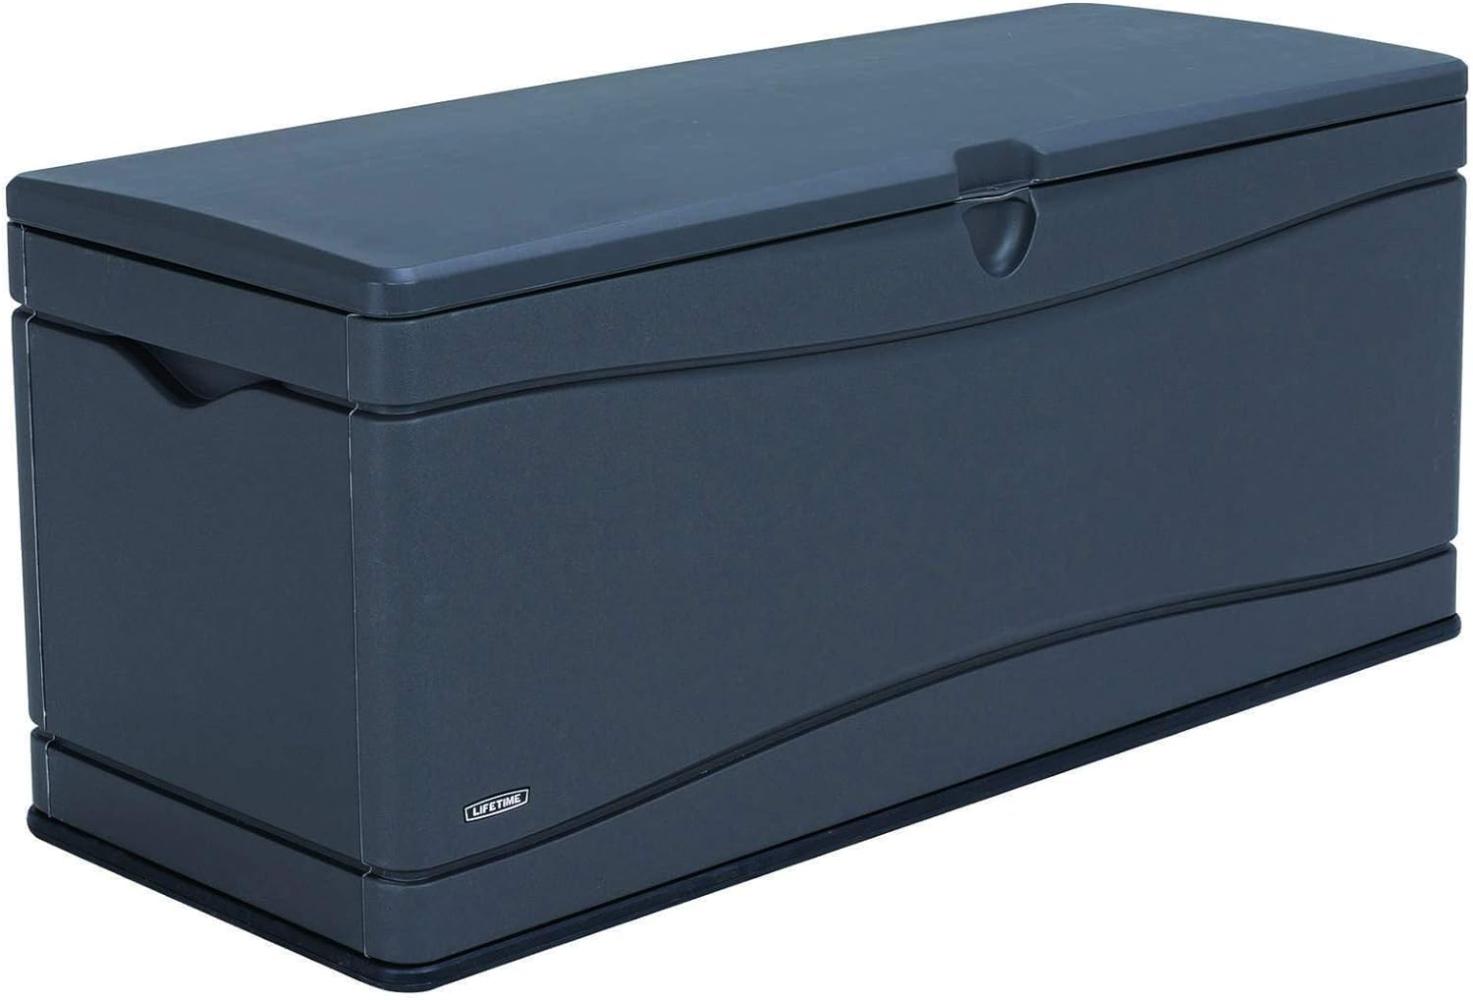 Lifetime Kunststoff Kissen Aufbewahrungsbox 495 Liter | Carbongrau | 61x152,5x67 cm Bild 1